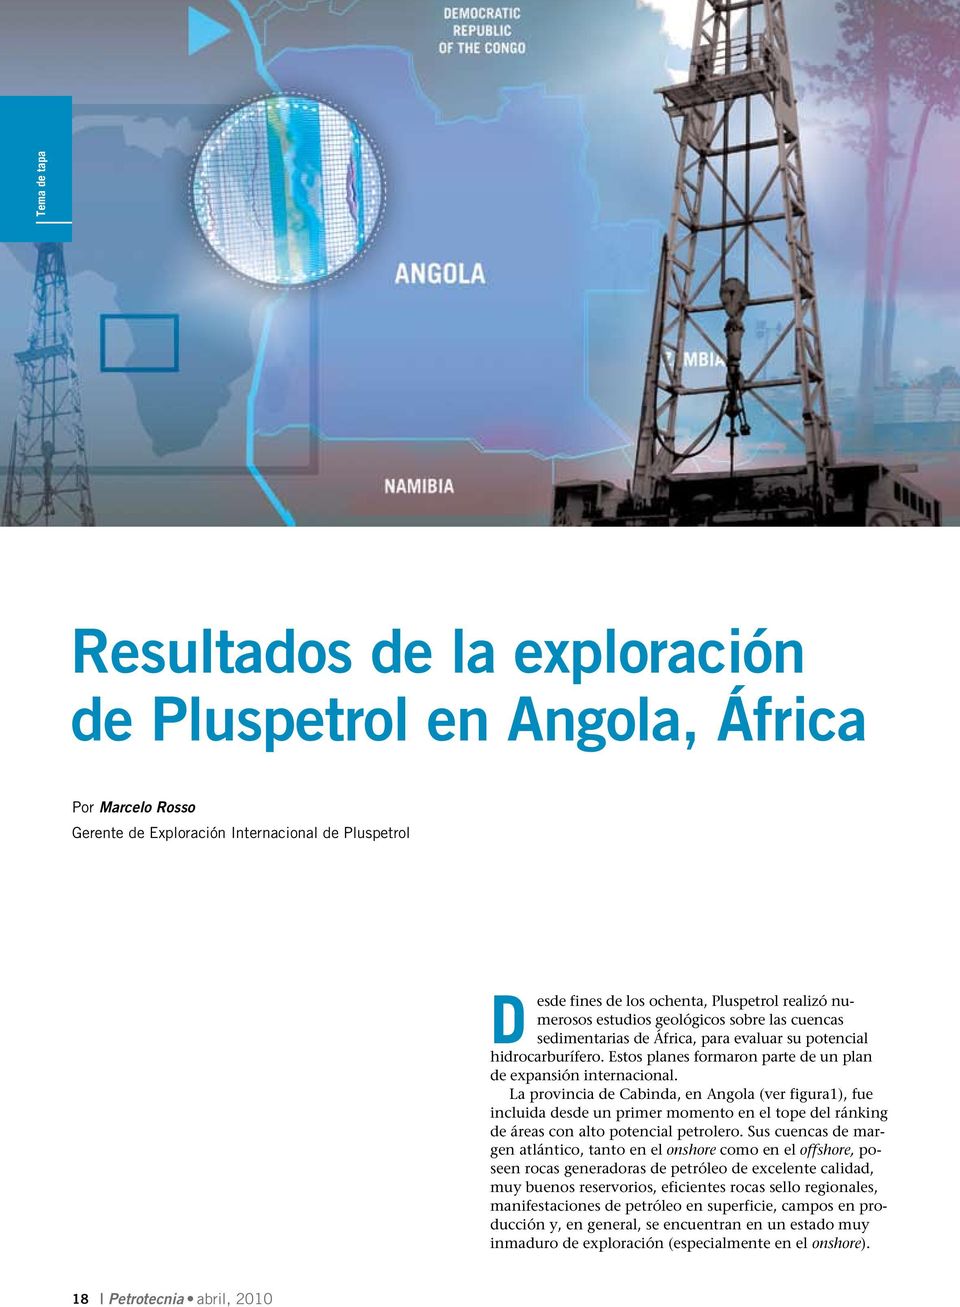 La provincia de Cabinda, en Angola (ver figura1), fue incluida desde un primer momento en el tope del ránking de áreas con alto potencial petrolero.